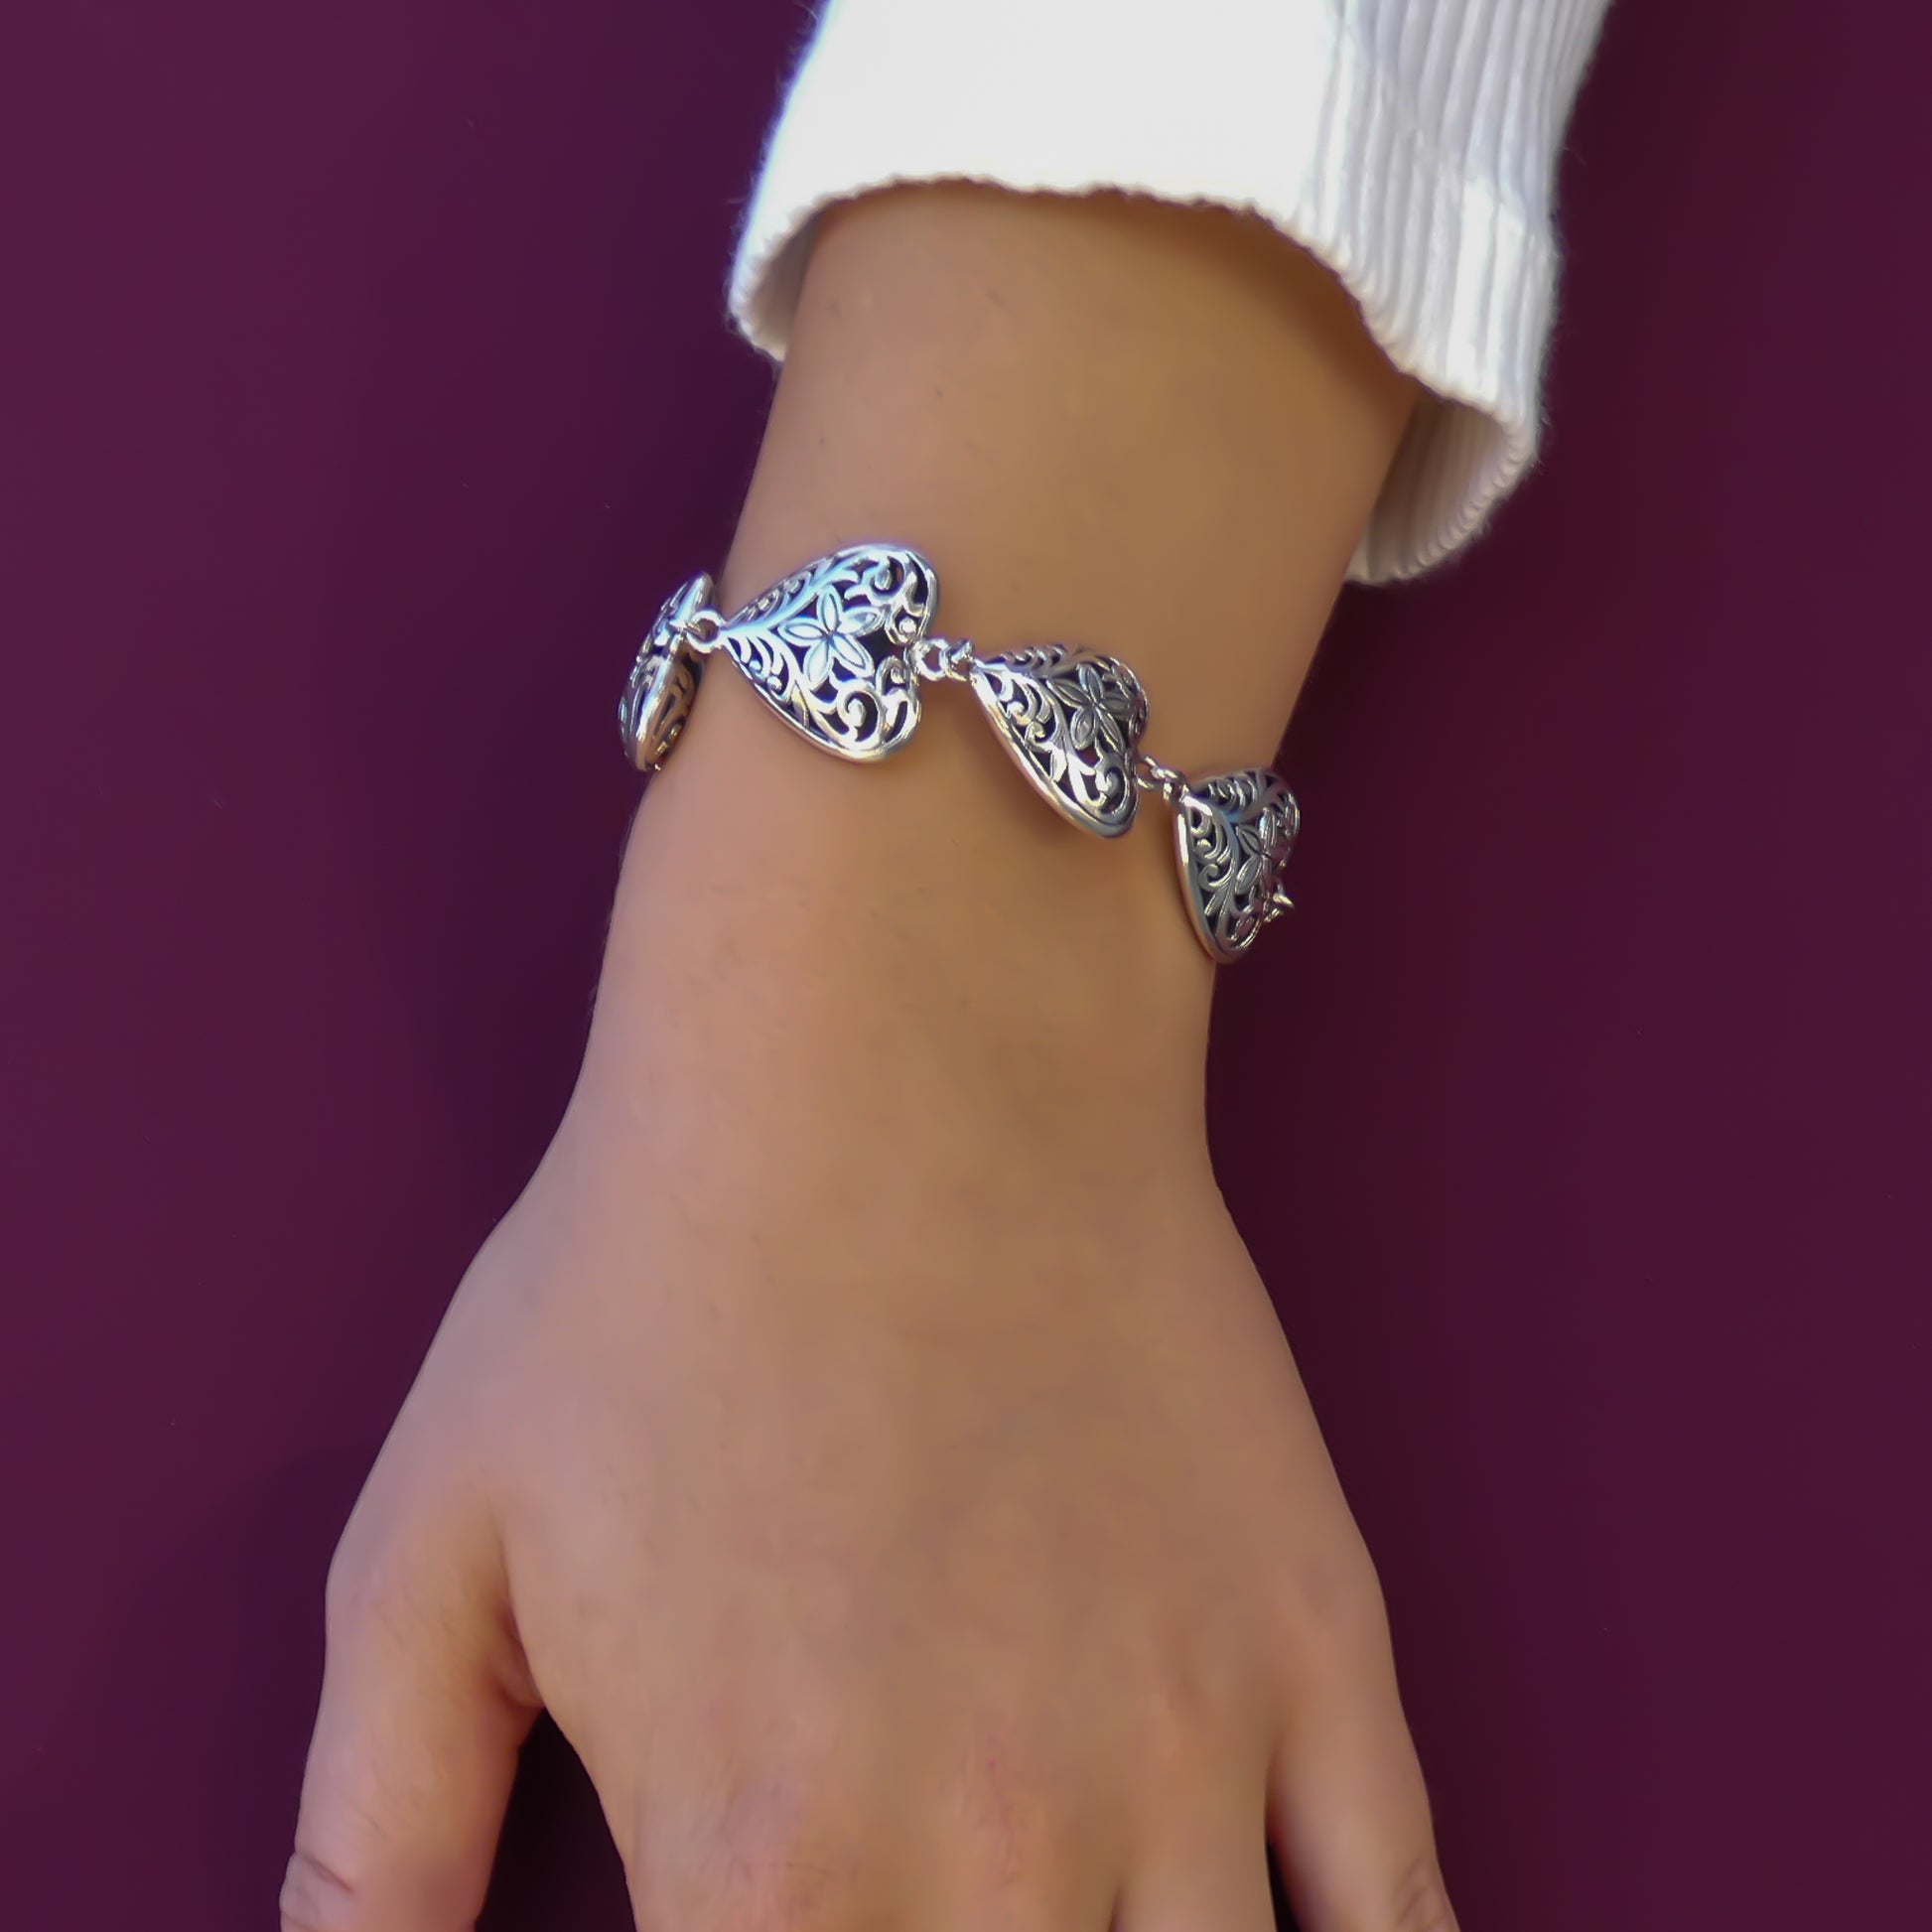 Woman wearing an ornate silver heart link bracelet.